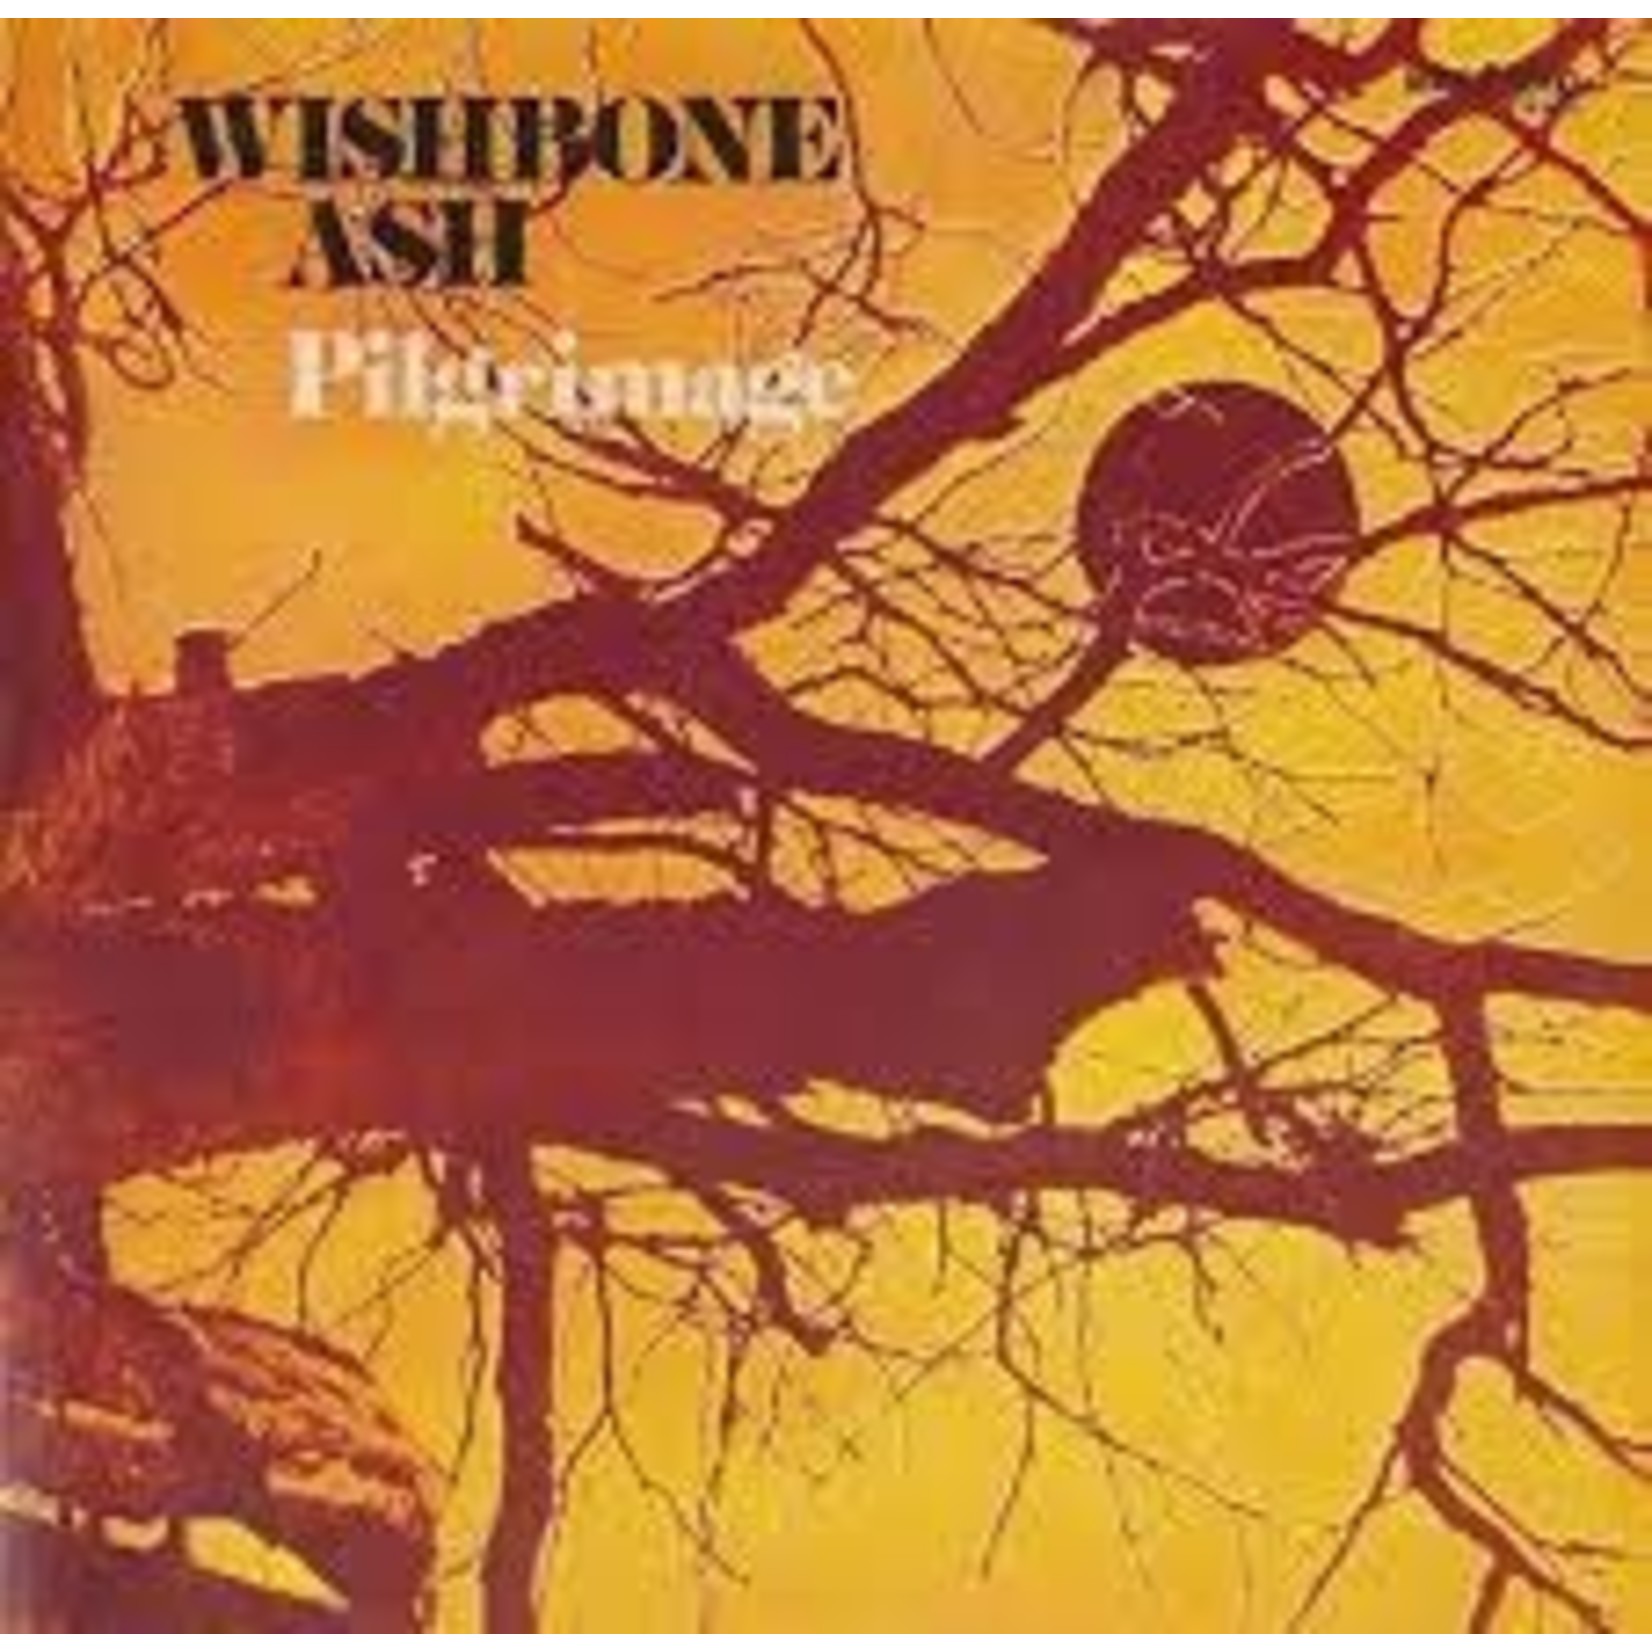 WISHBONE ASH - pilgrimage LP